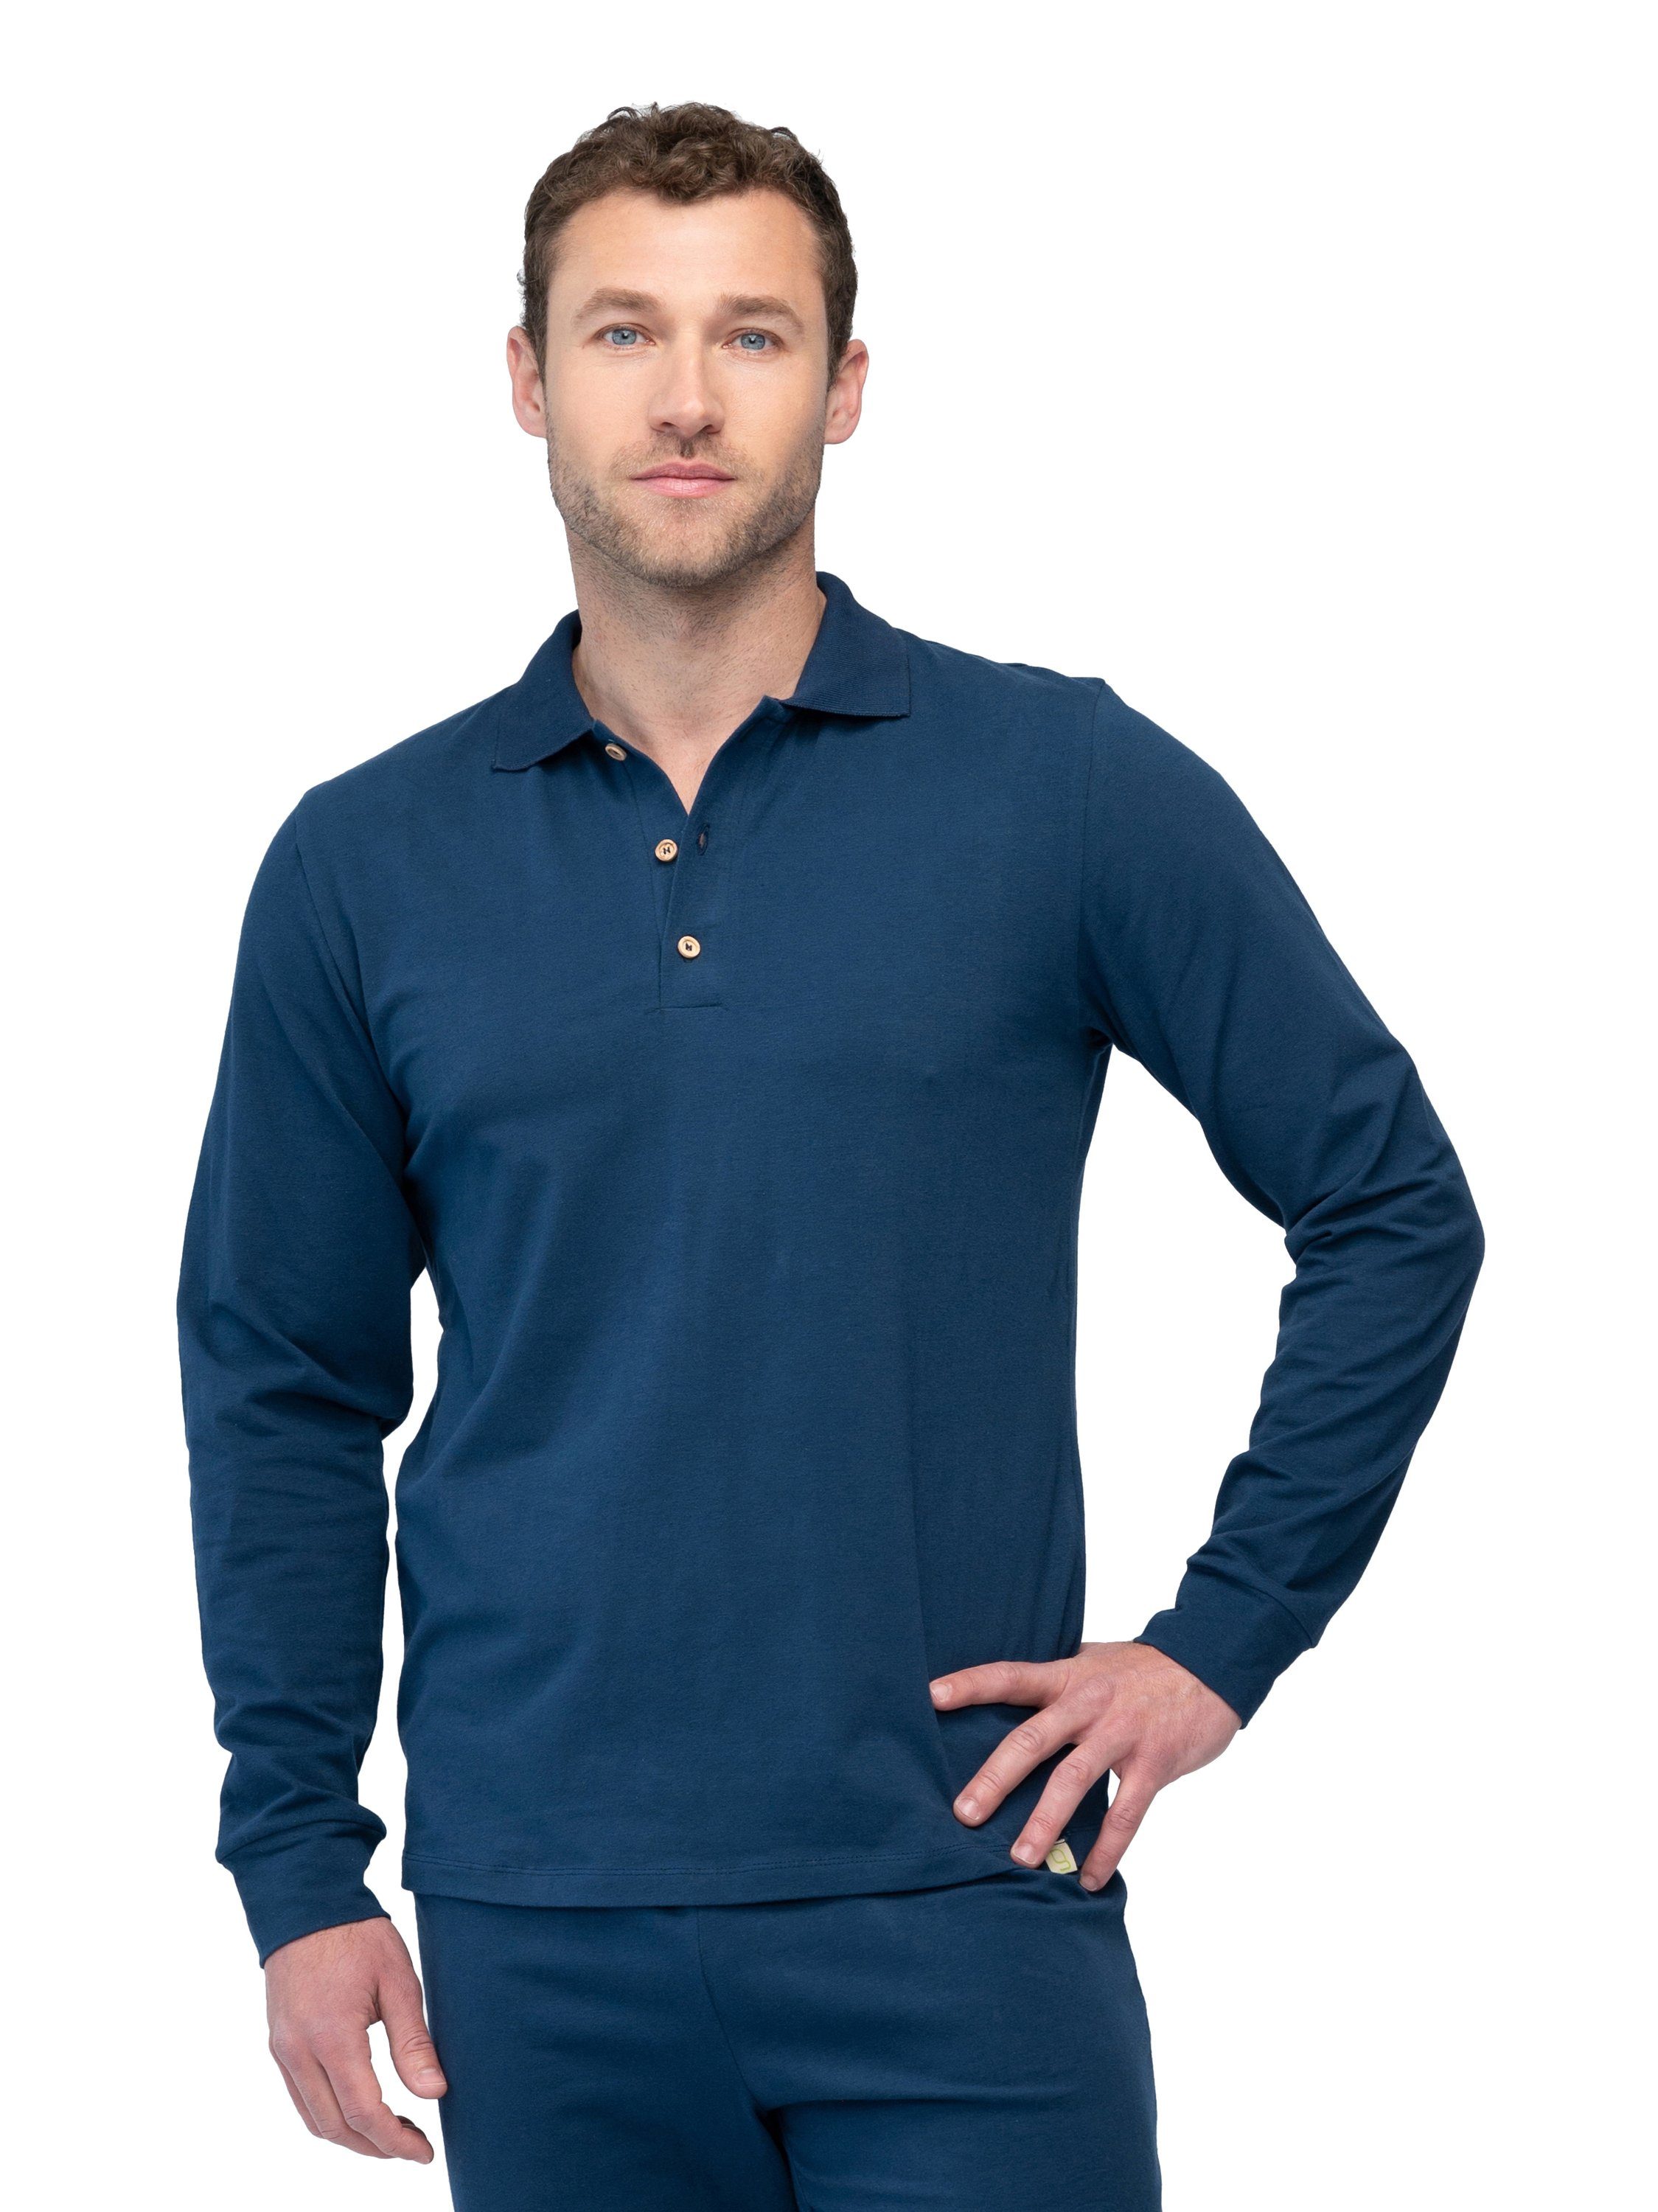 greenjama Pyjamaoberteil Herren Langarm-Shirt mit Polo-Kragen Bio-Baumwolle